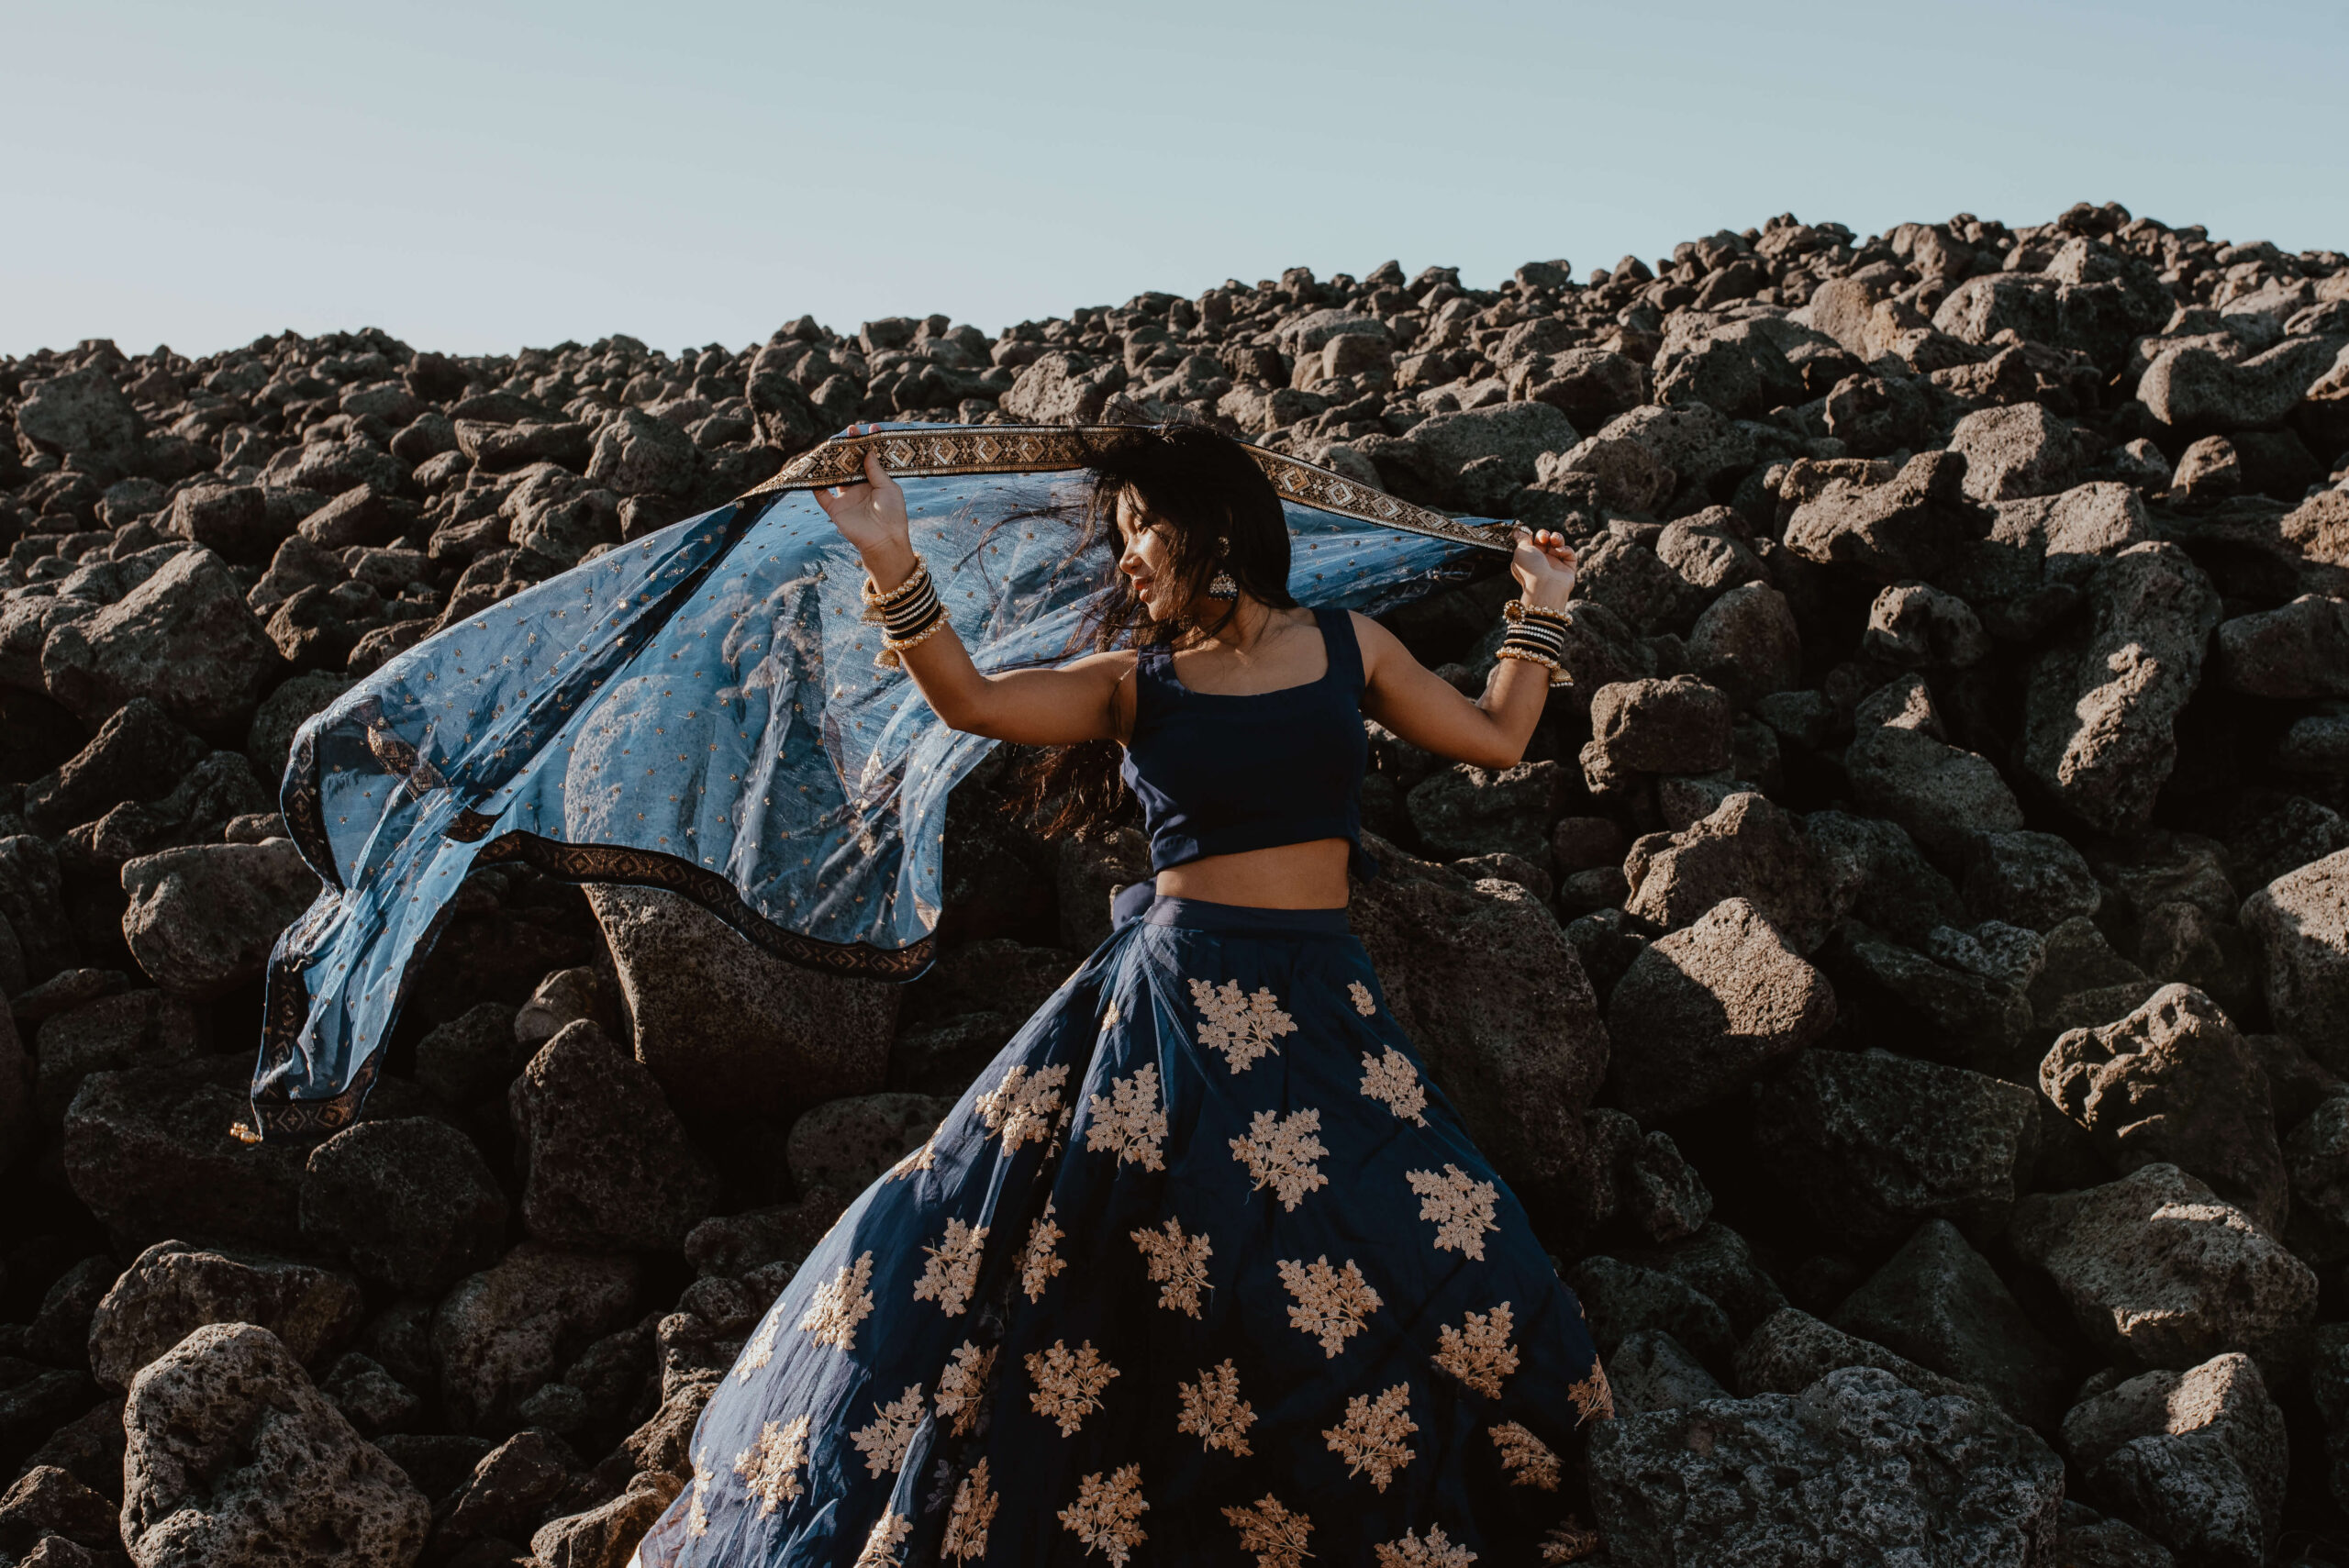 Das Foto zeigt eine junge Frau in einem traditionellen Kleid, die im Rahmen einer Fotosession an einem windigen Sommertag auf einer isländischen Wiese steht und sich in der Sonne wärmt. Die Wiese ist von grünem Gras bedeckt und im Hintergrund sind majestätische Berge und Hügel zu sehen. Die Farben des Fotos sind überwiegend Grün- und Blautöne, die die Schönheit und Unberührtheit der isländischen Landschaft widerspiegeln. Die junge Frau steht in einer selbstbewussten Haltung da und verleiht dem Foto eine gewisse Stärke und Entschlossenheit. In ihrer traditionellen Kleidung zeigt sie eine Verbindung zu ihrer Heimat und kulturellen Identität. Das Foto ist Teil einer Fotosession, die speziell für Frauen konzipiert wurde. Das Ziel ist es, die Schönheit und Stärke von Frauen in verschiedenen Kulturen und Ländern zu feiern. In diesem Kontext unterstreicht das Foto die Schönheit und Stärke isländischer Frauen und ihre tiefe Verbindung zur Natur. Insgesamt ist das Foto ein beeindruckendes Porträt einer jungen Frau, das in einer speziell für Frauen konzipierten Fotosession entstanden ist.